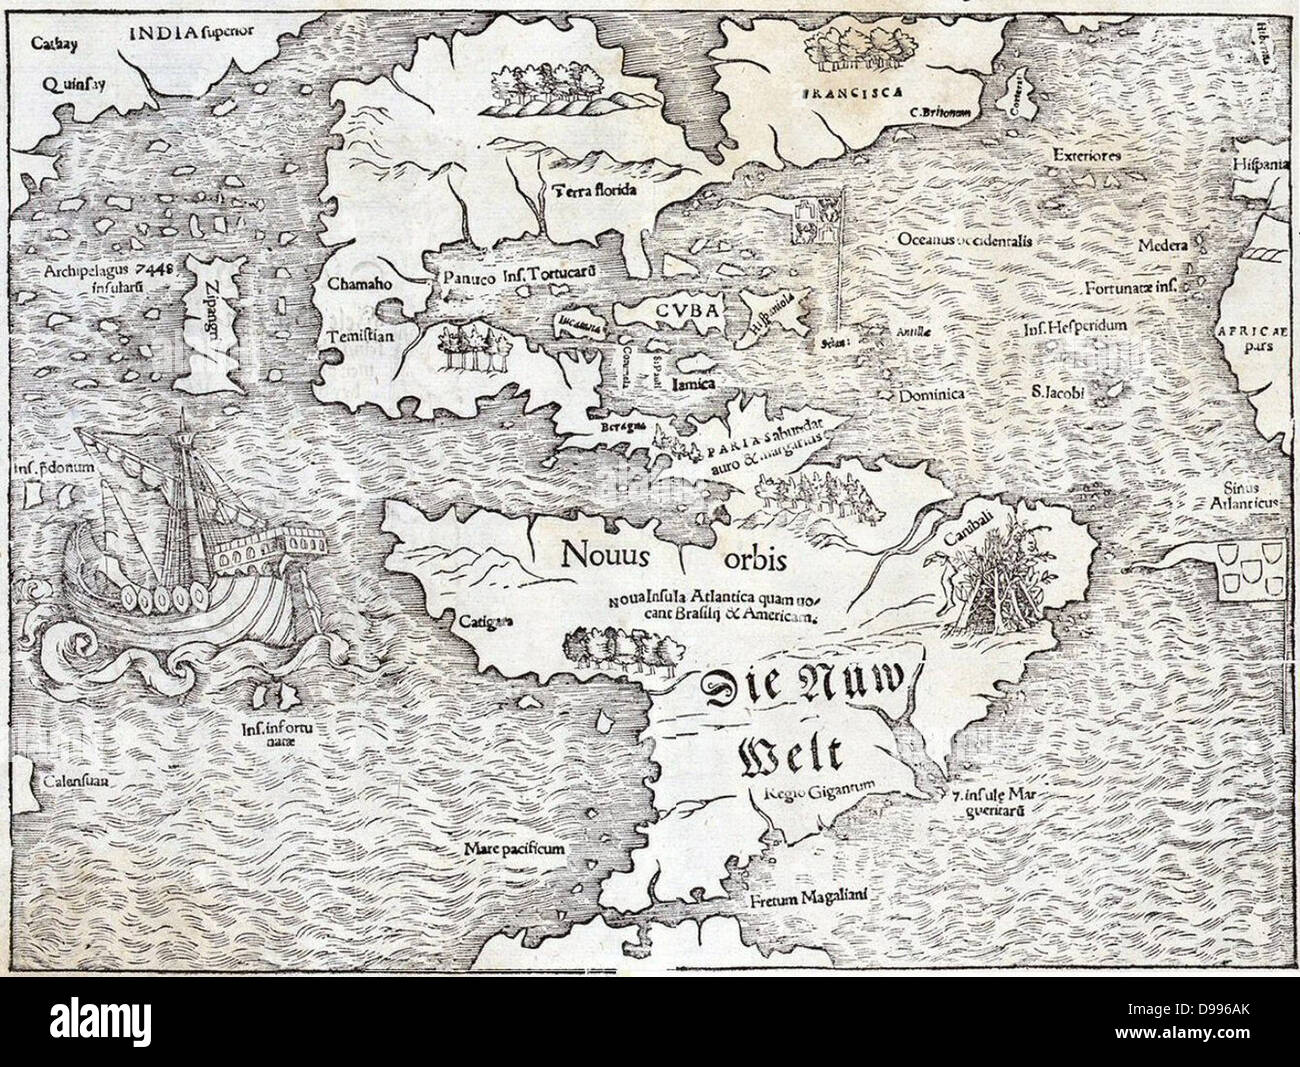 La carte du Nouveau Monde par Sebastian Munster, 1540, montrant le nom de l'Île 'Atlantis' Banque D'Images